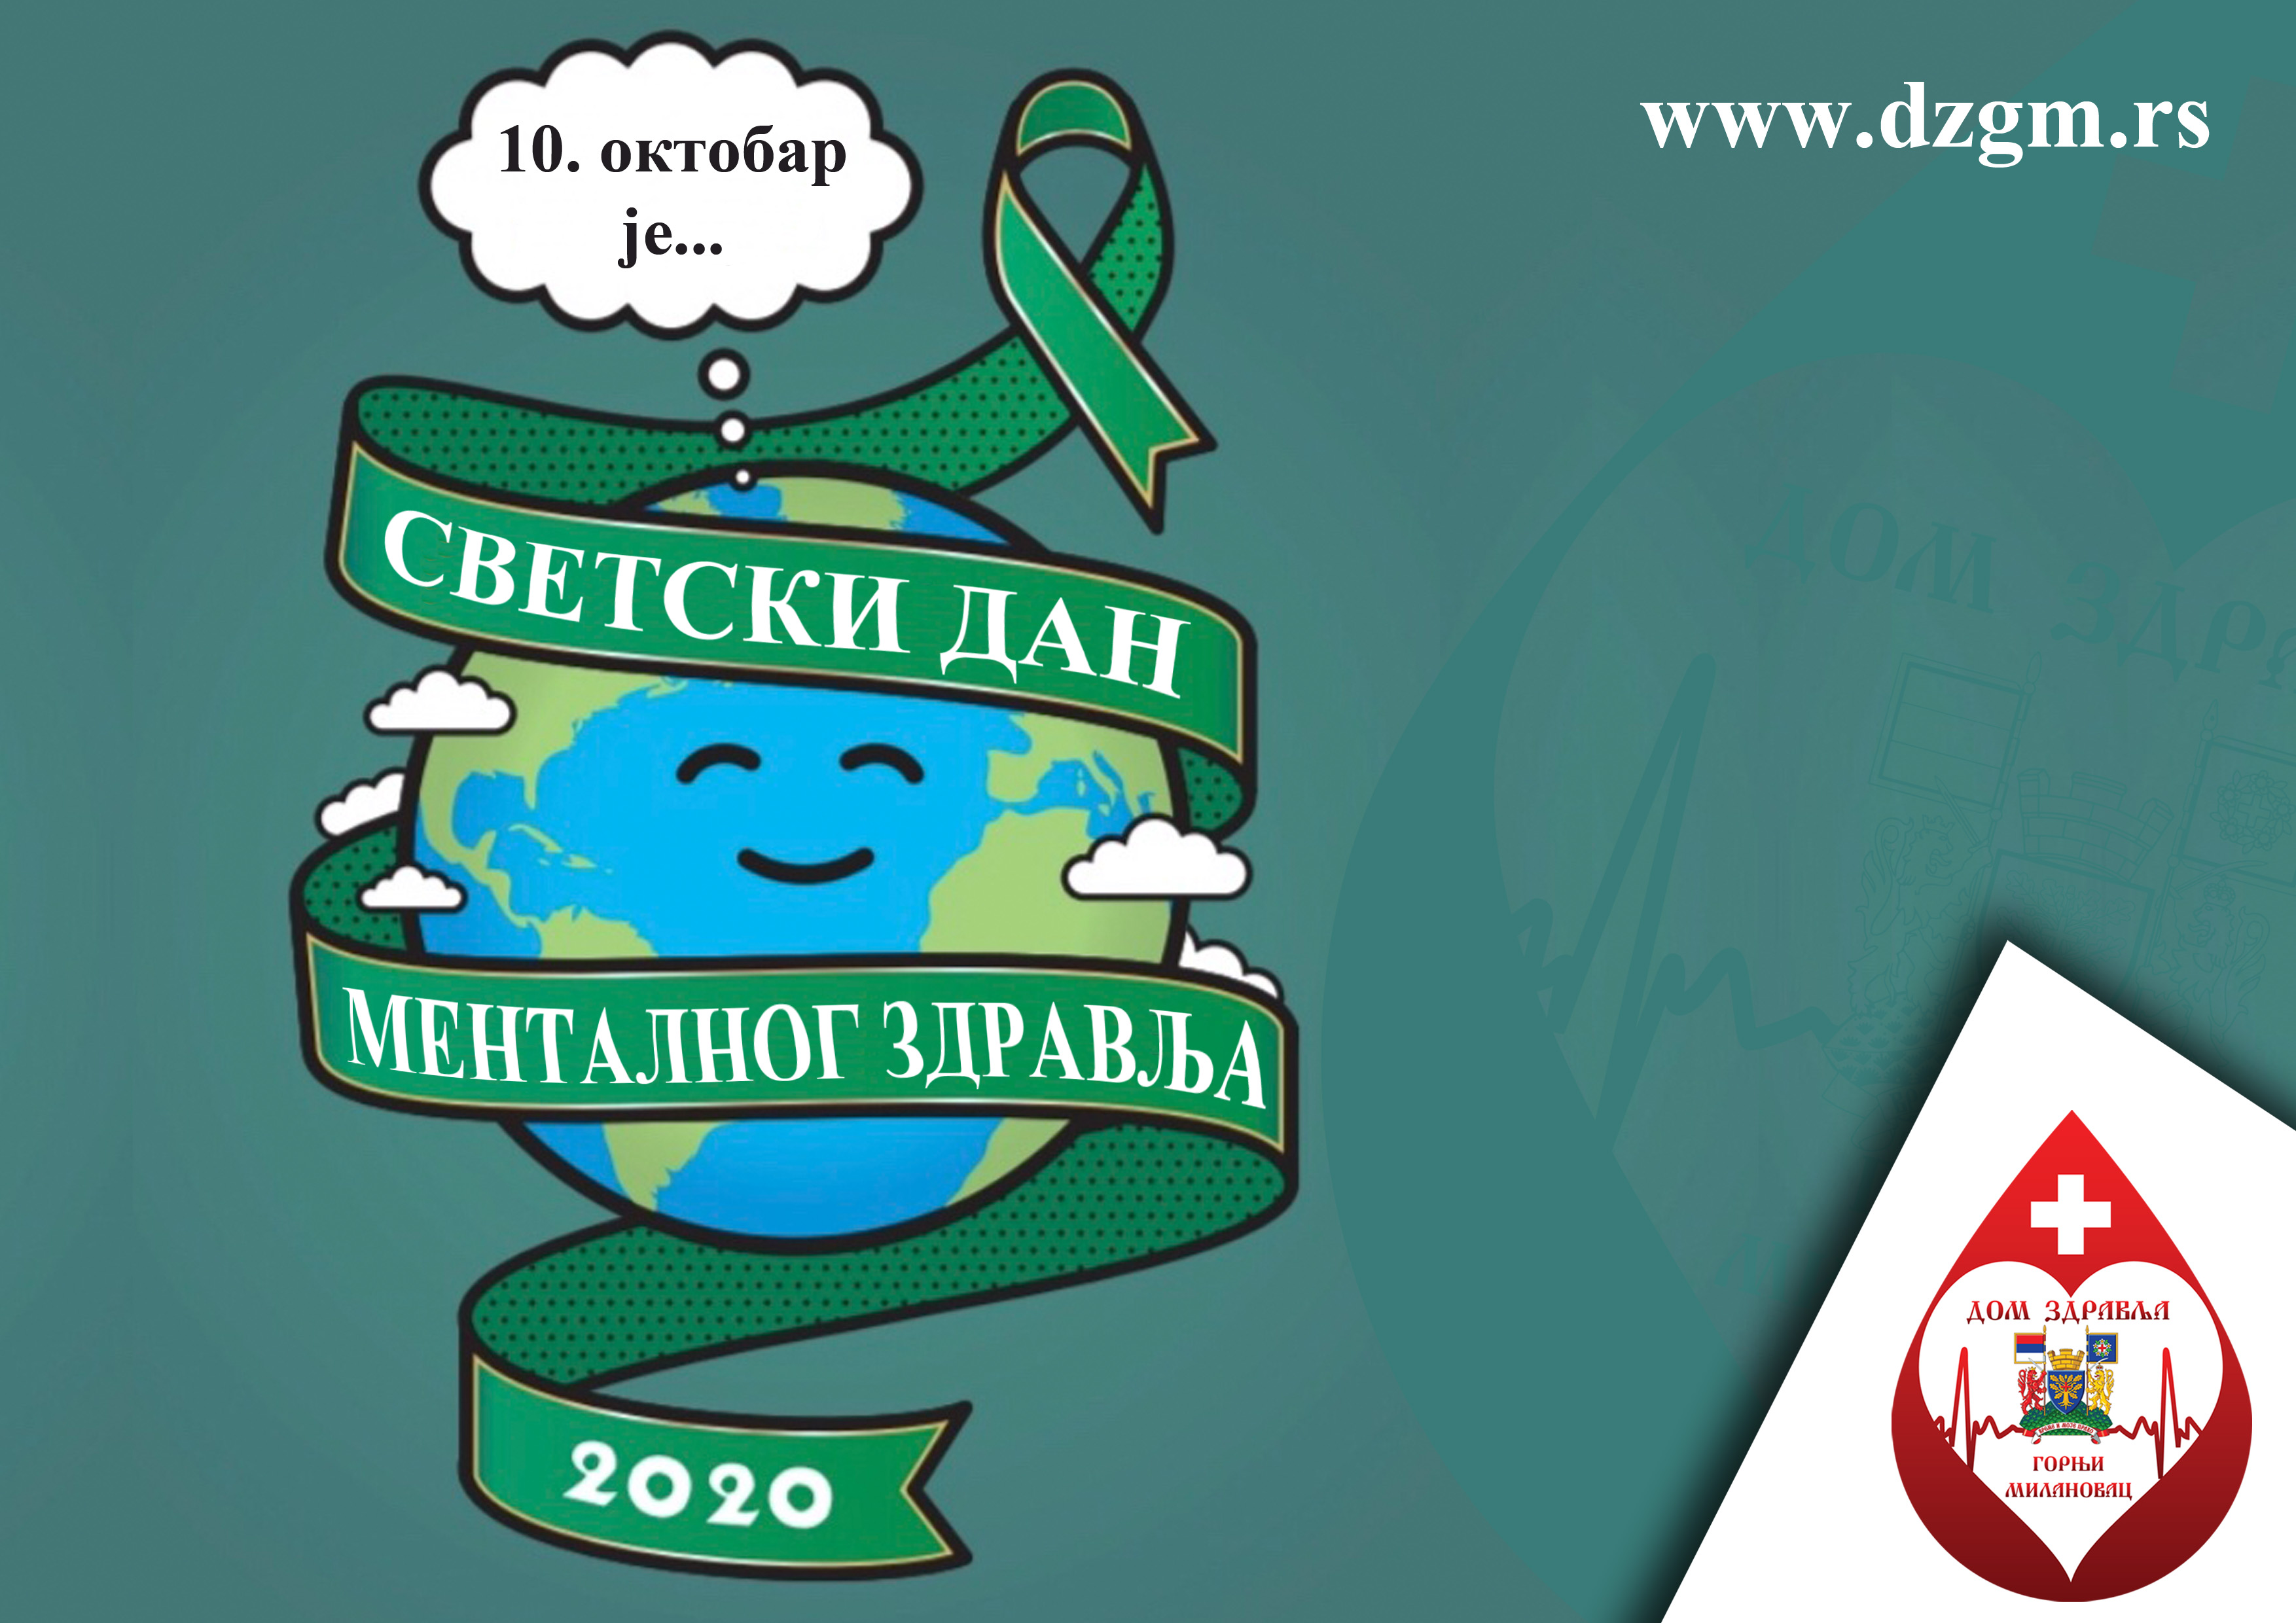 Svetski dan mentalnog zdravlja - 10. oktobar 2020. godine dom zdravlja Gornji Milanovac